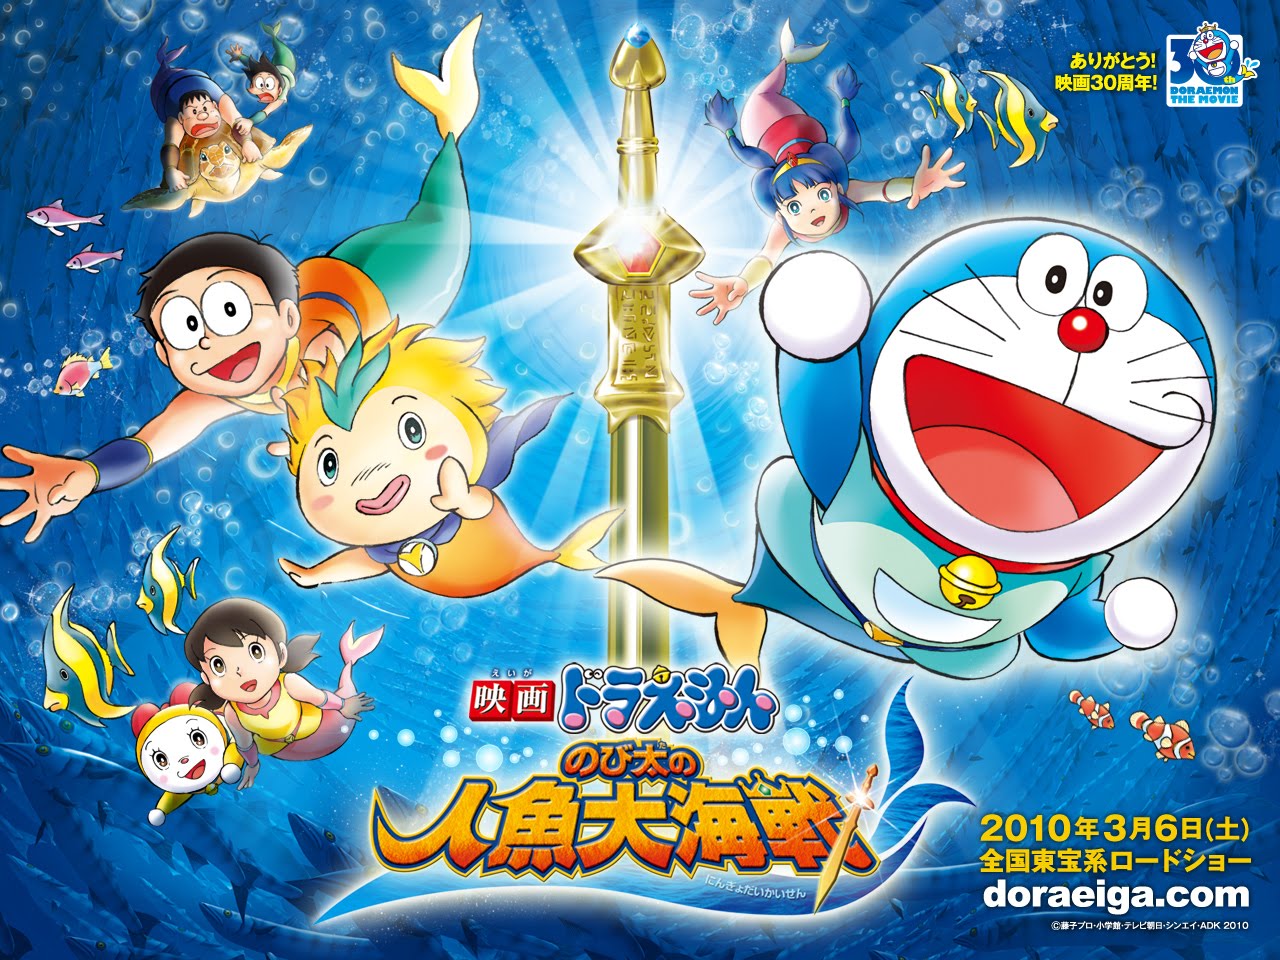 Asal Mula Doraemon Yongsin Szlovely